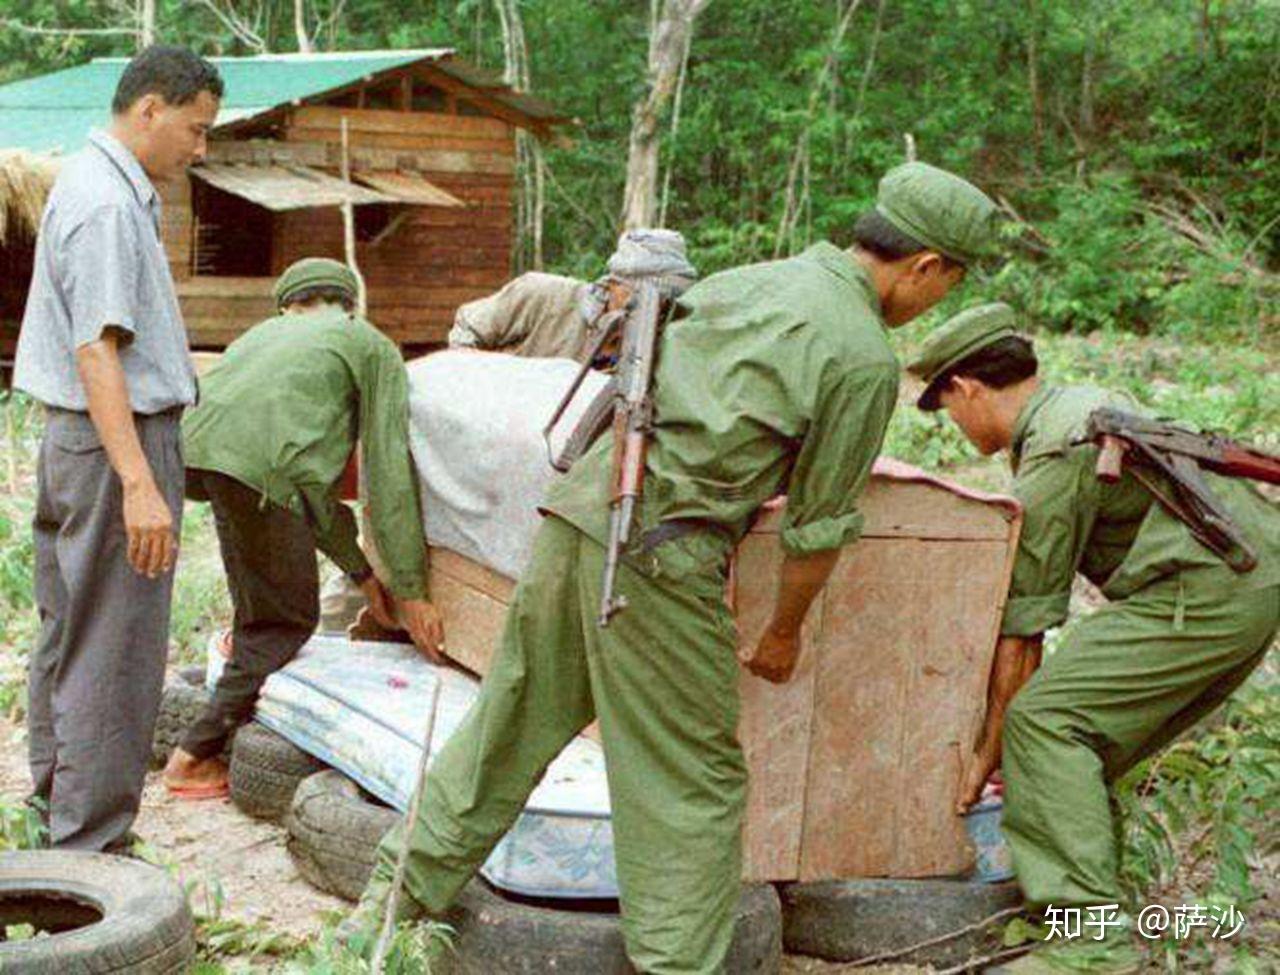 尚伯格：親歷紅色高棉大屠殺的時報記者 - 紐約時報中文網